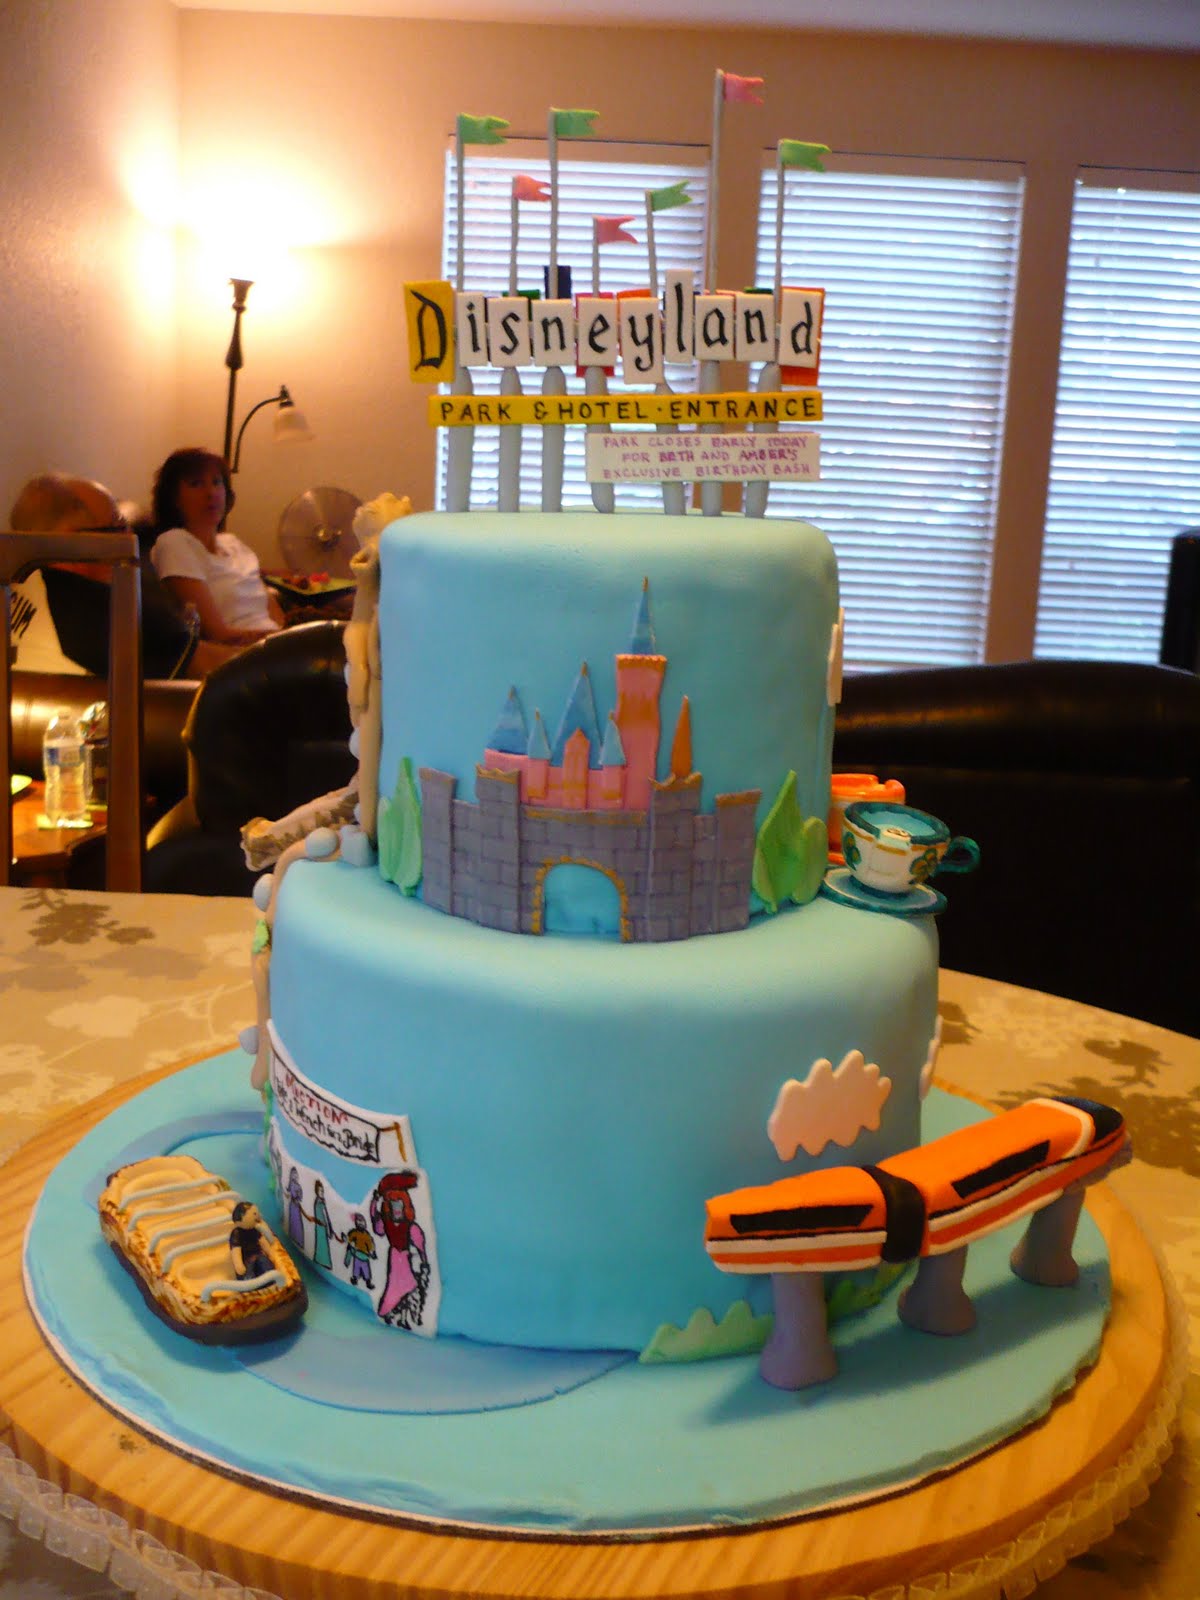 Disneyland Birthday Cake